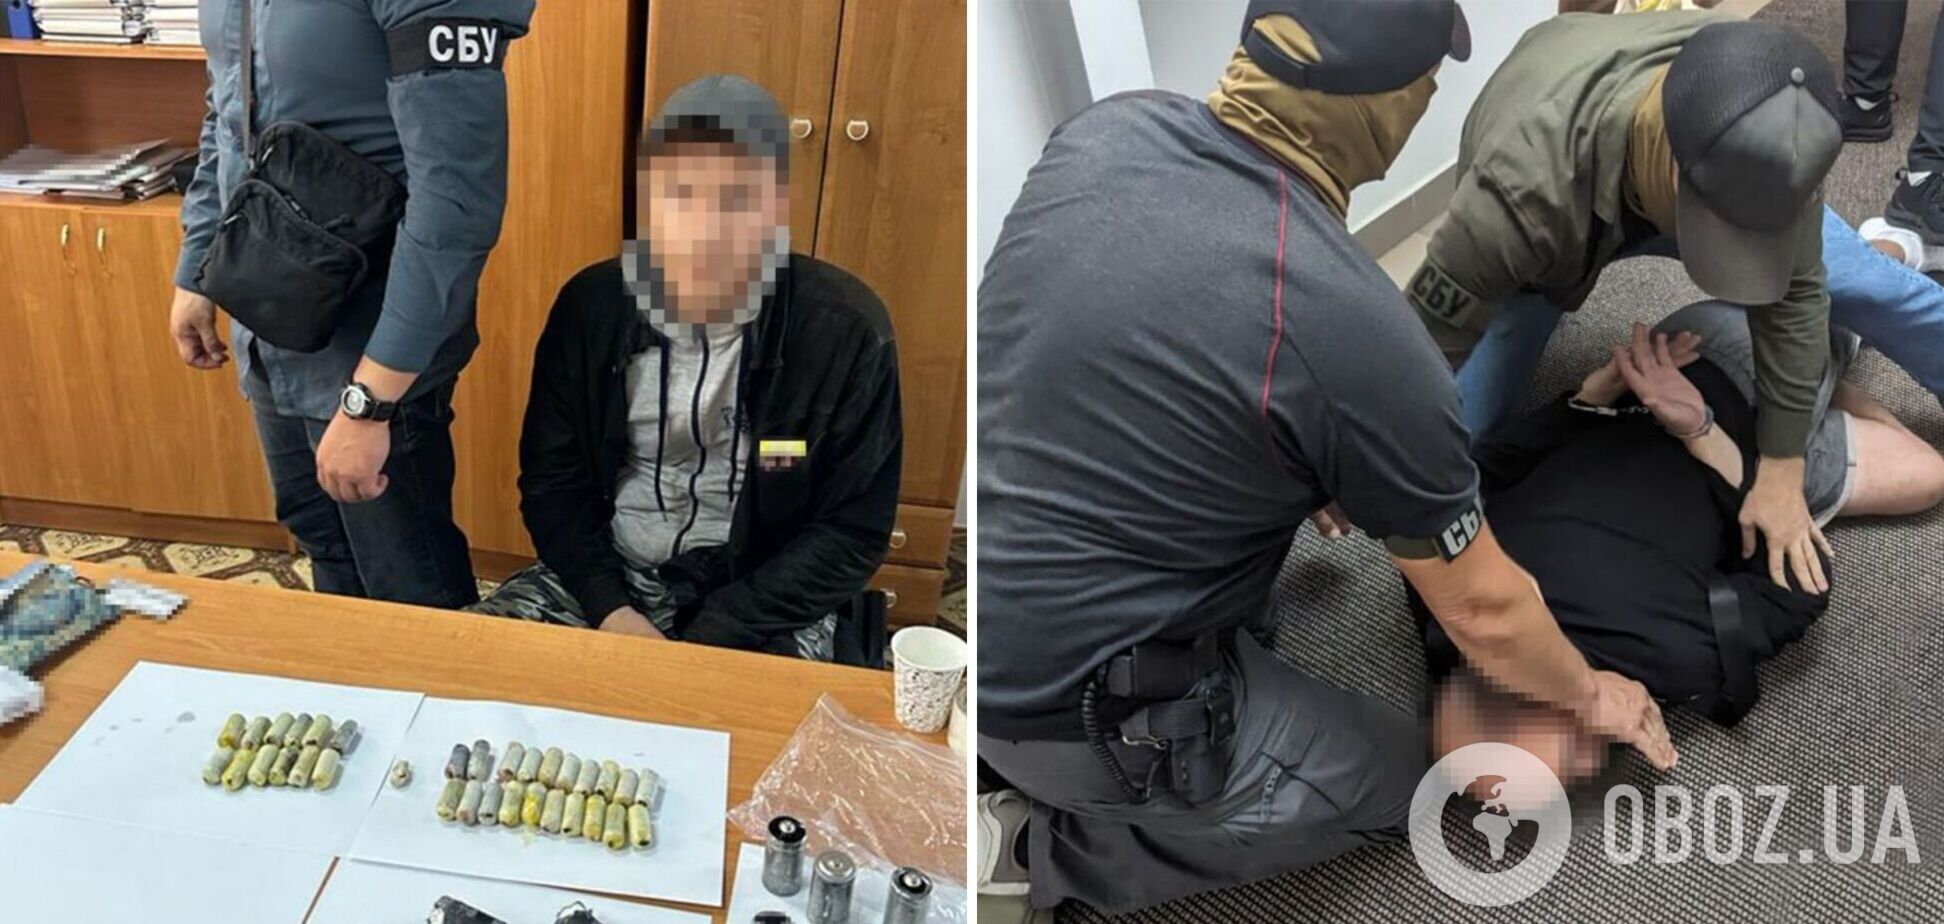 Перевозил в желудке кокаин на 3,5 млн. грн.: СБУ задержала на границе Украины наркоторговца. Фото